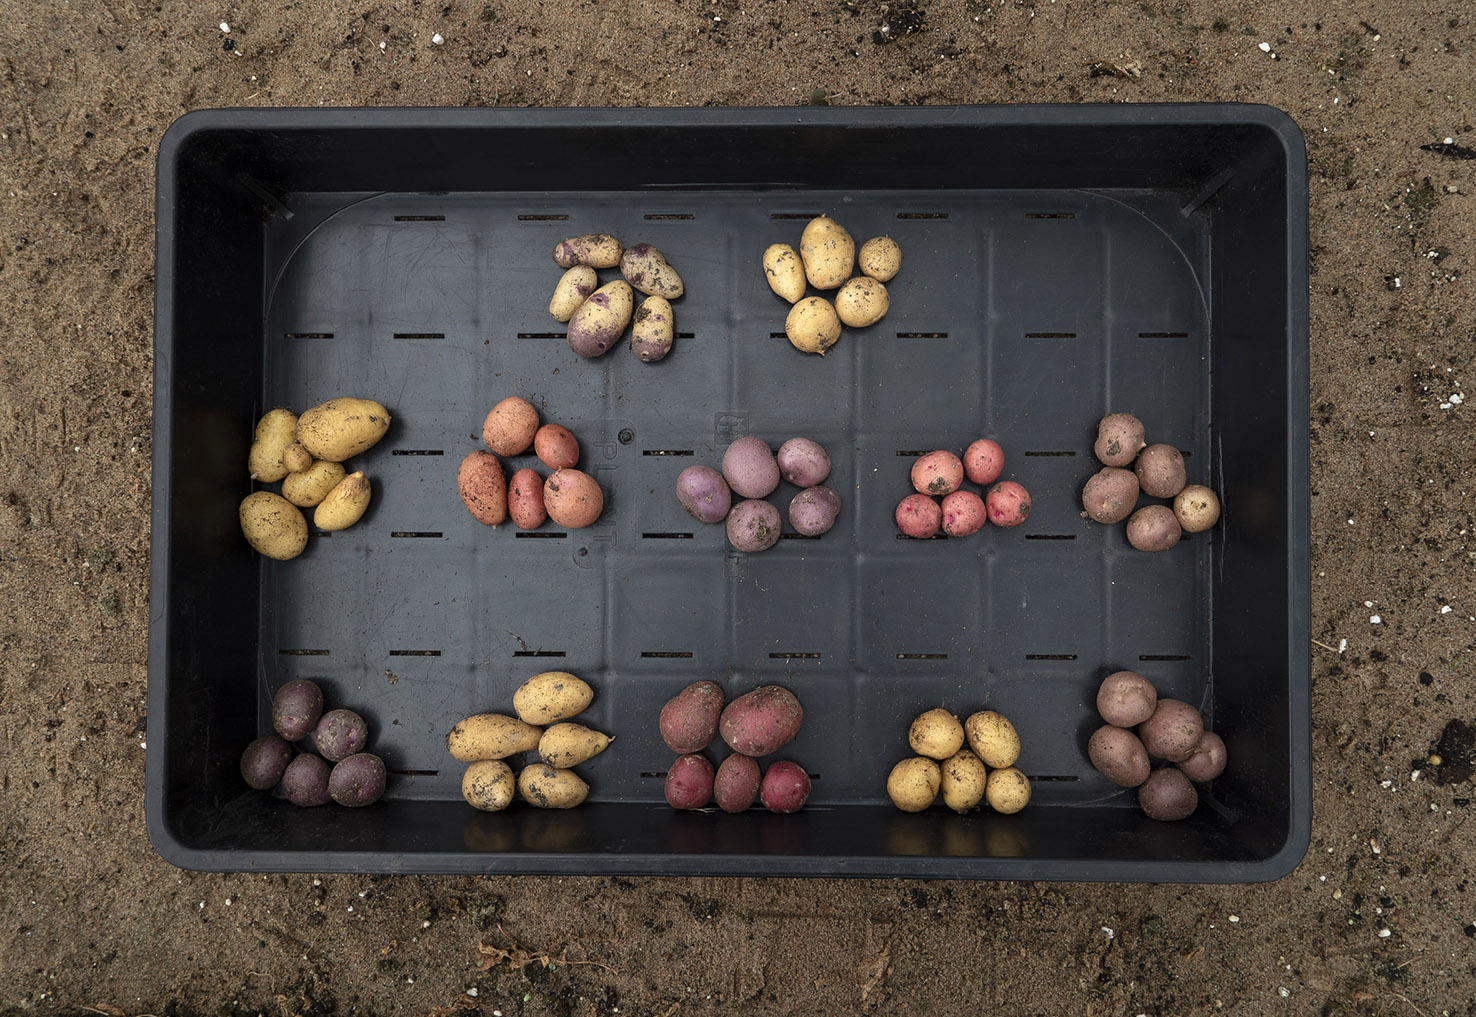 Twelve potatoes from NordGen's collection.